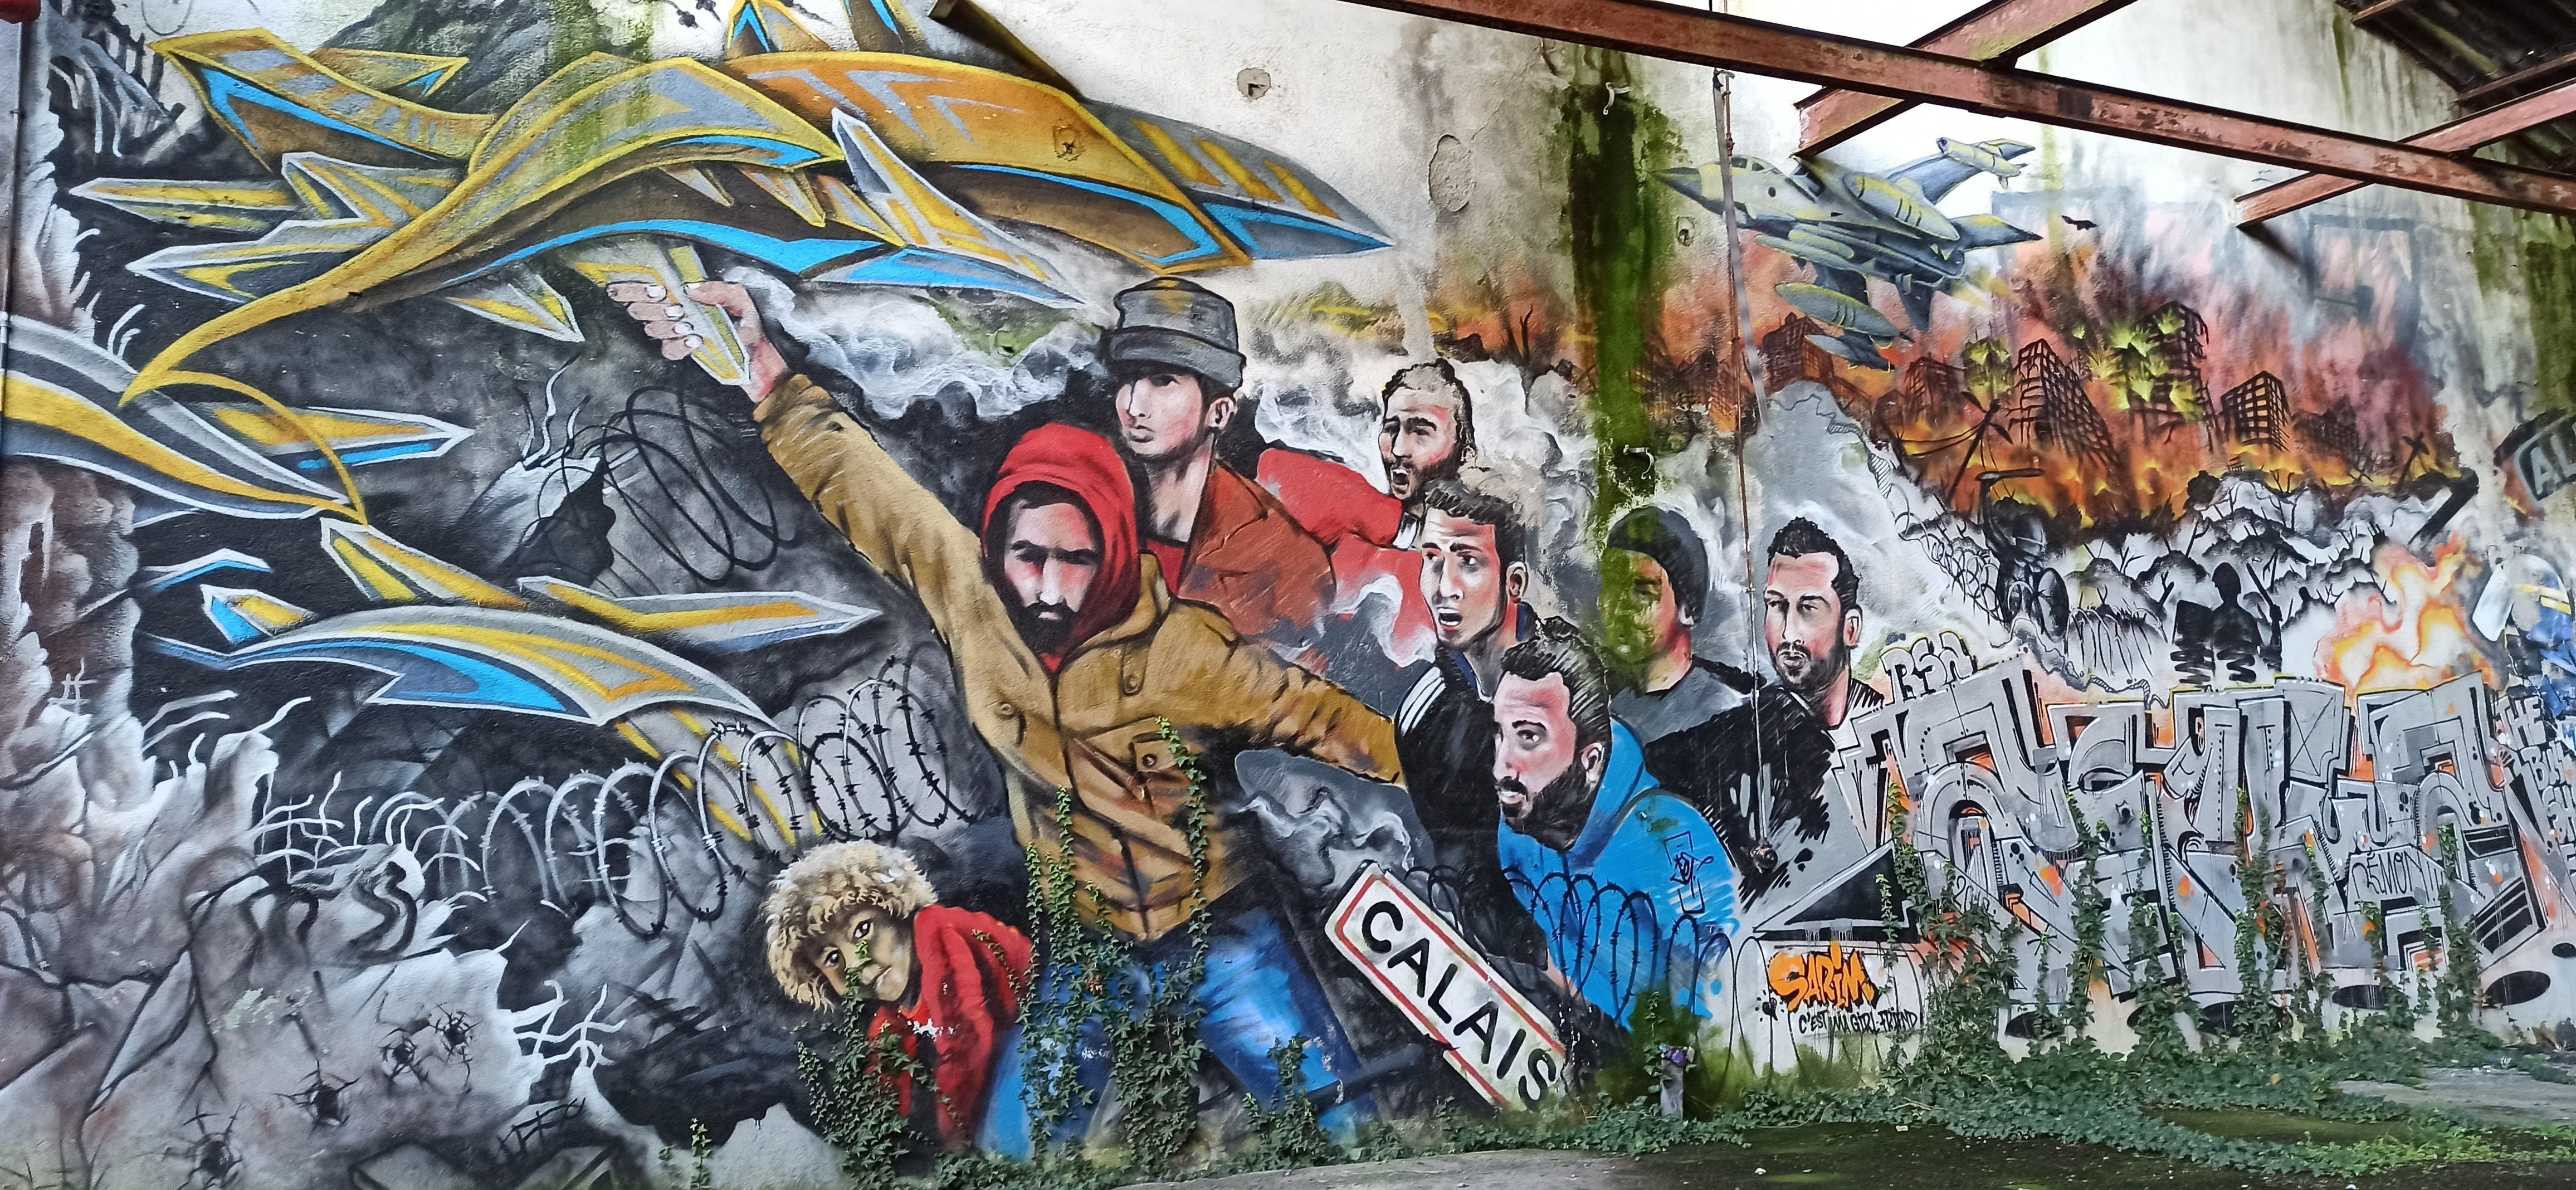 Graffiti 4895  capturé par Rabot à Lorient France